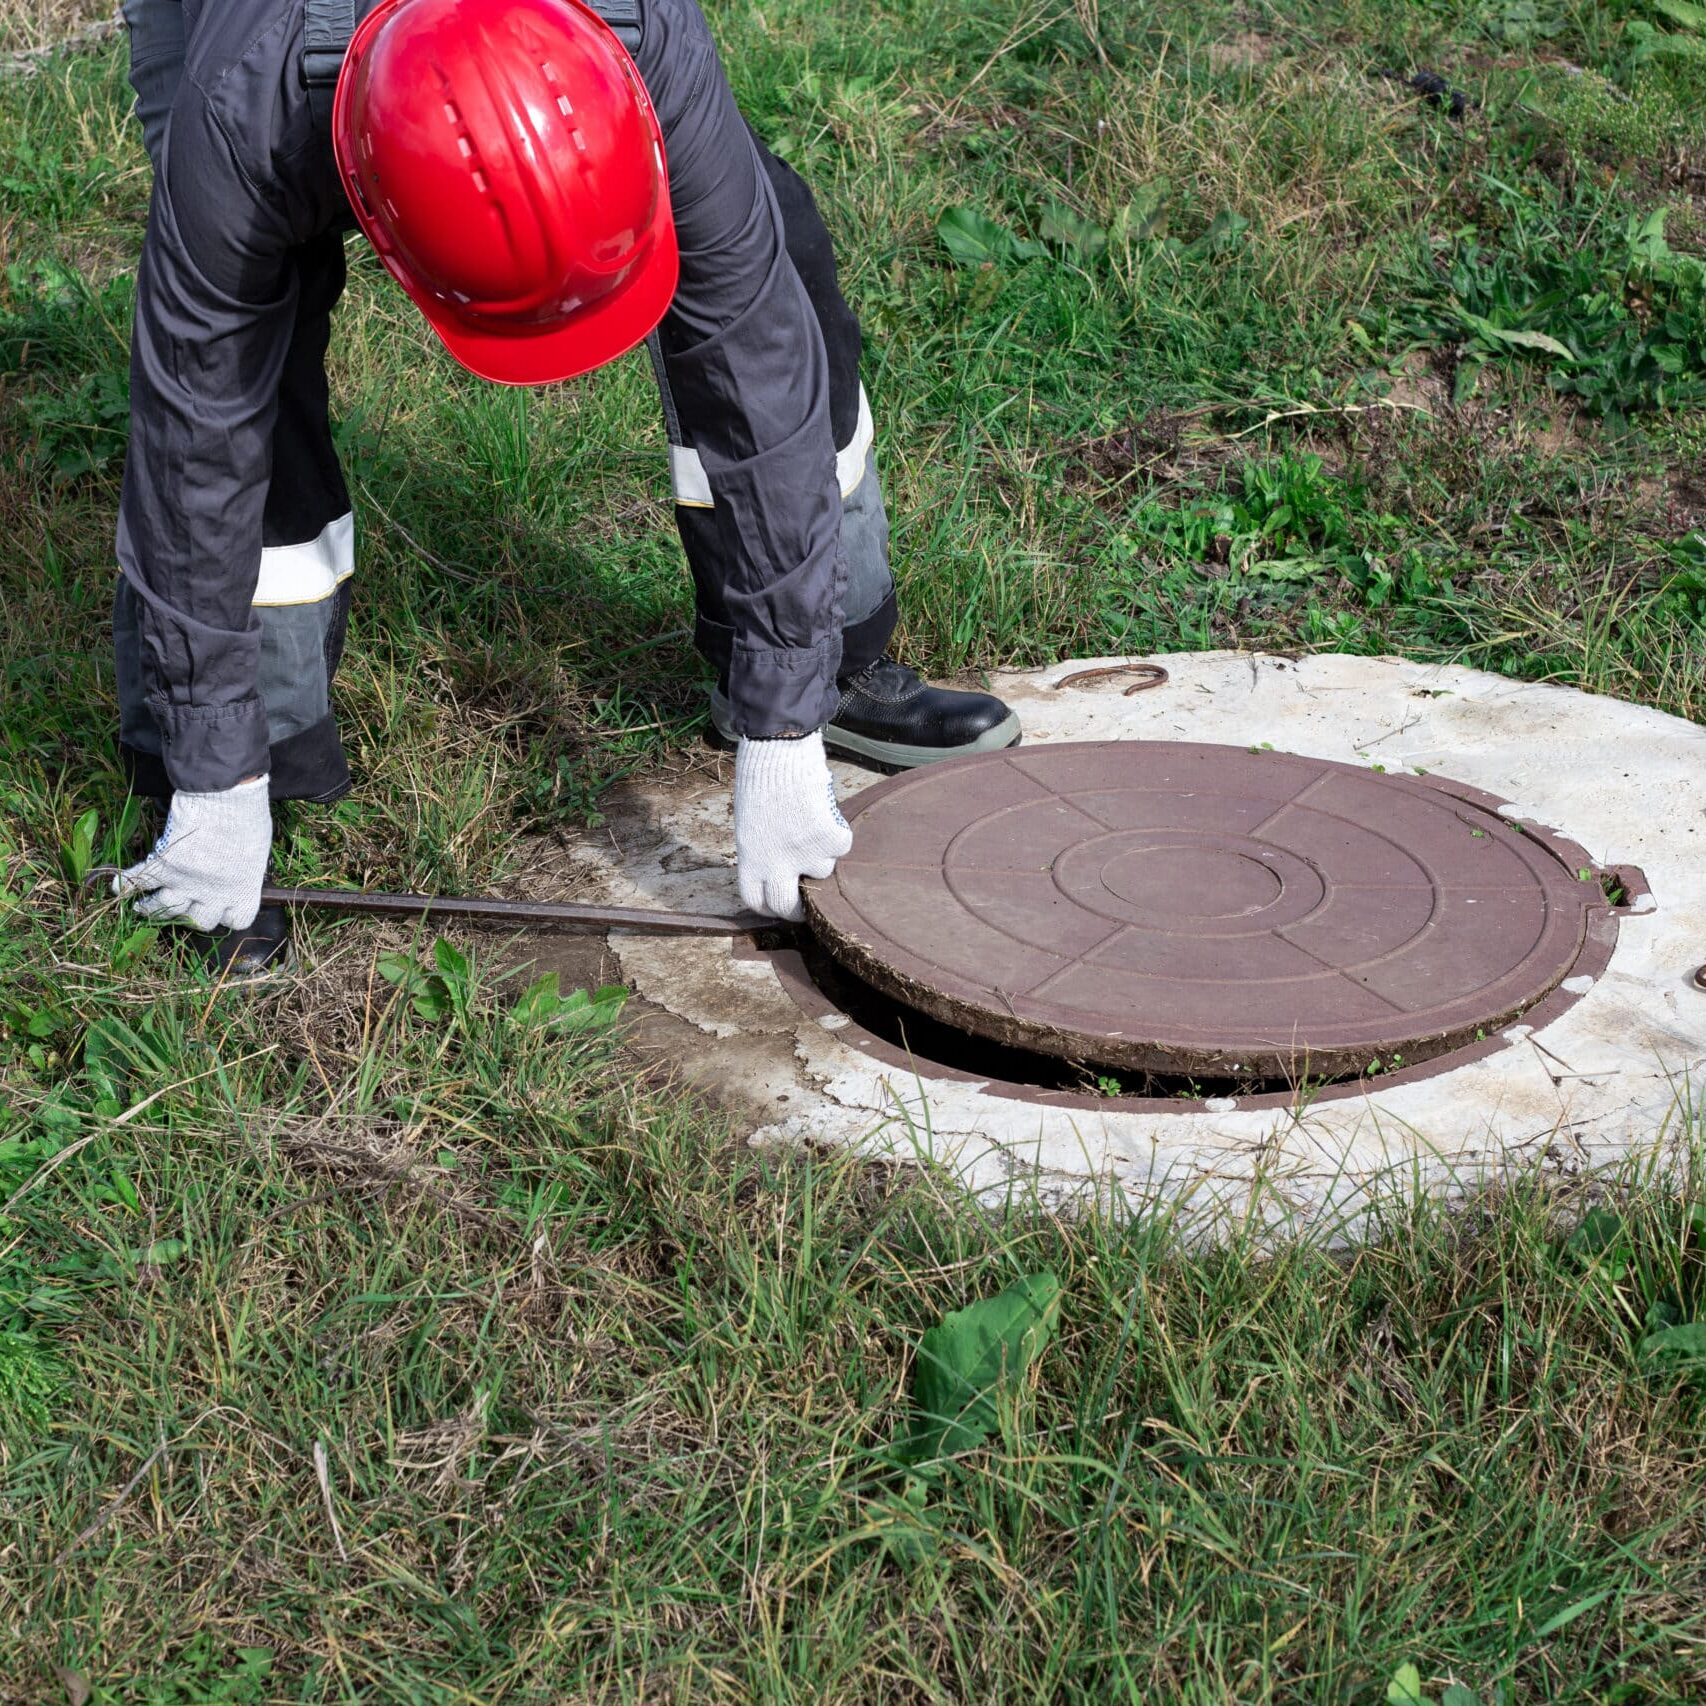 Comment dissoudre les boues d'une fosse septique ? - Utile et pratique